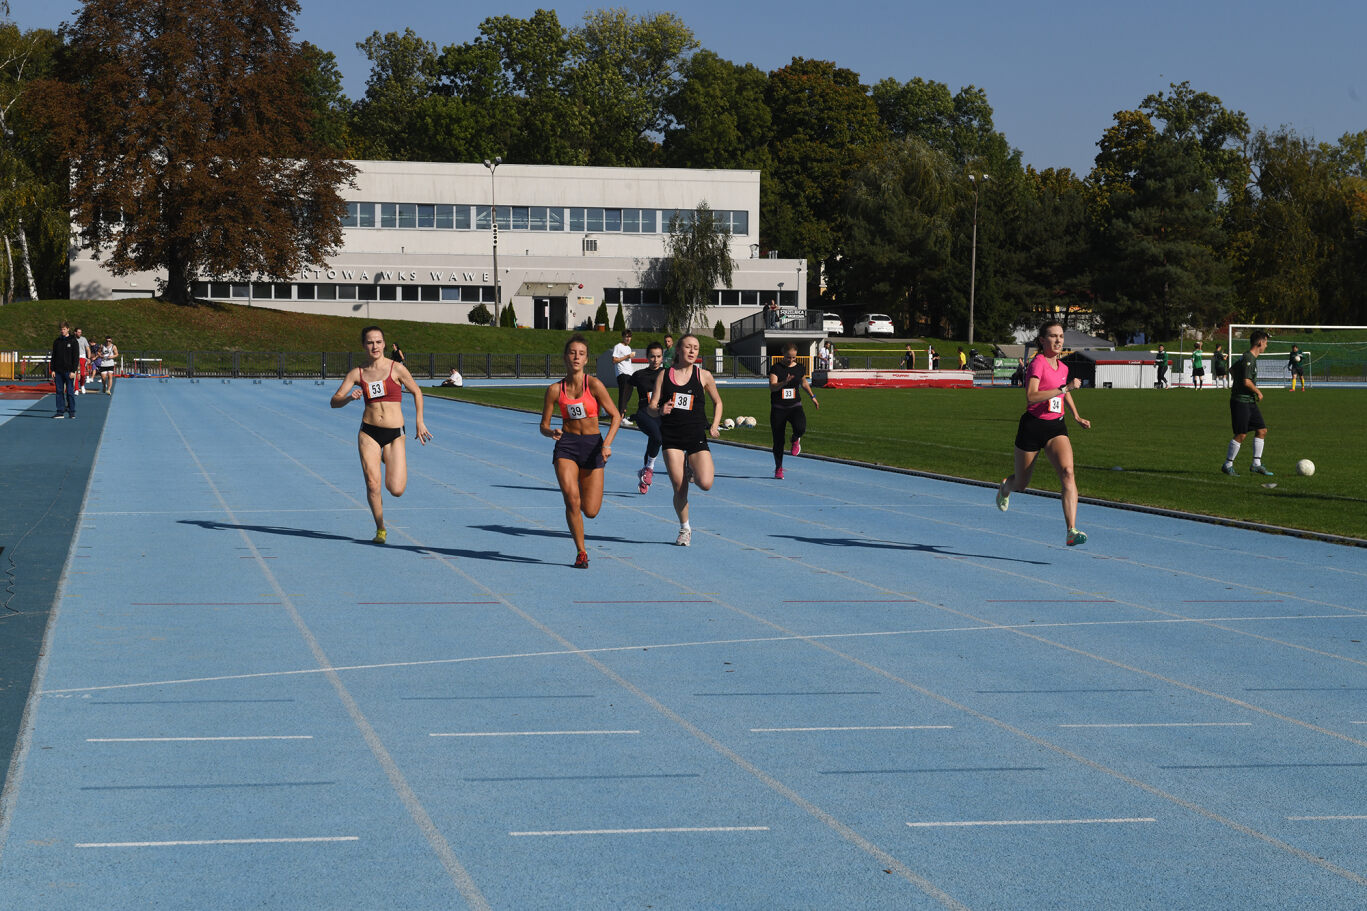 Grupa kobiet biegnie na bieżni.